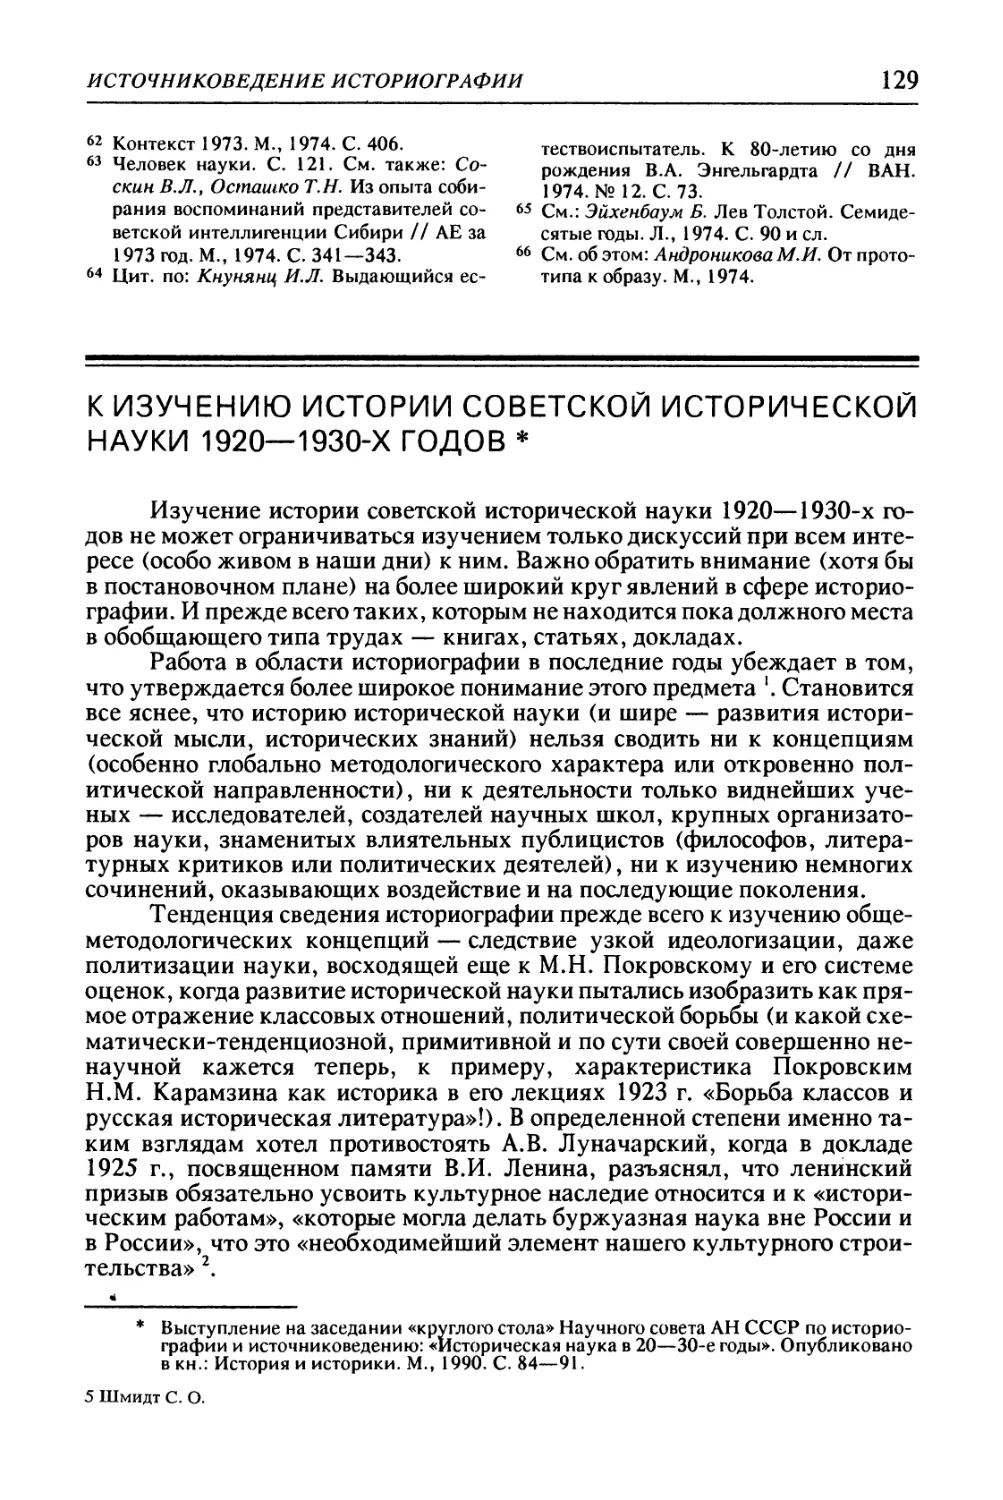 К изучению истории советской исторической науки 1920—1930-х годов